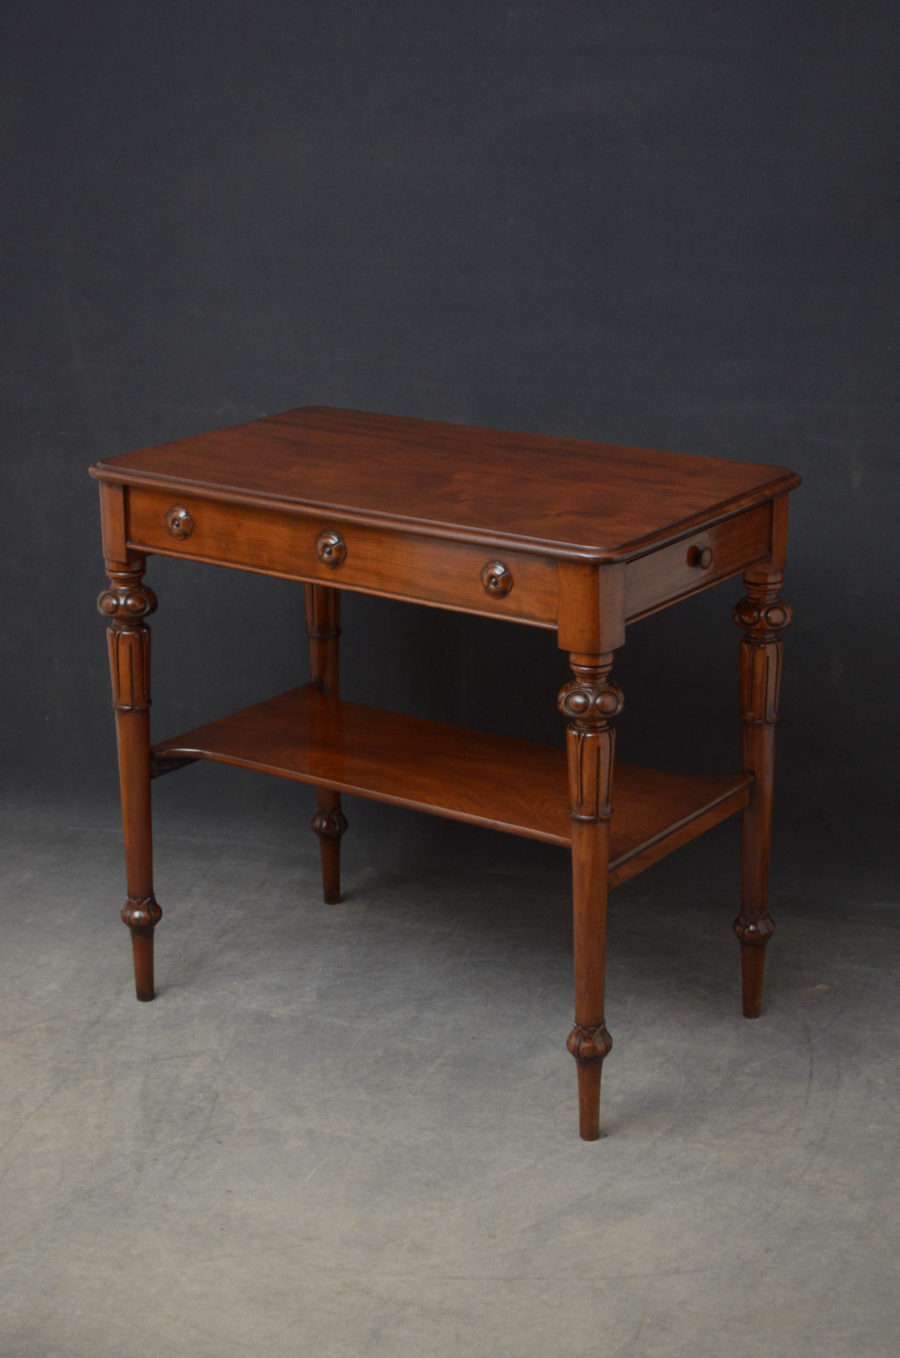 Tall Early Victorian Mahogany Table